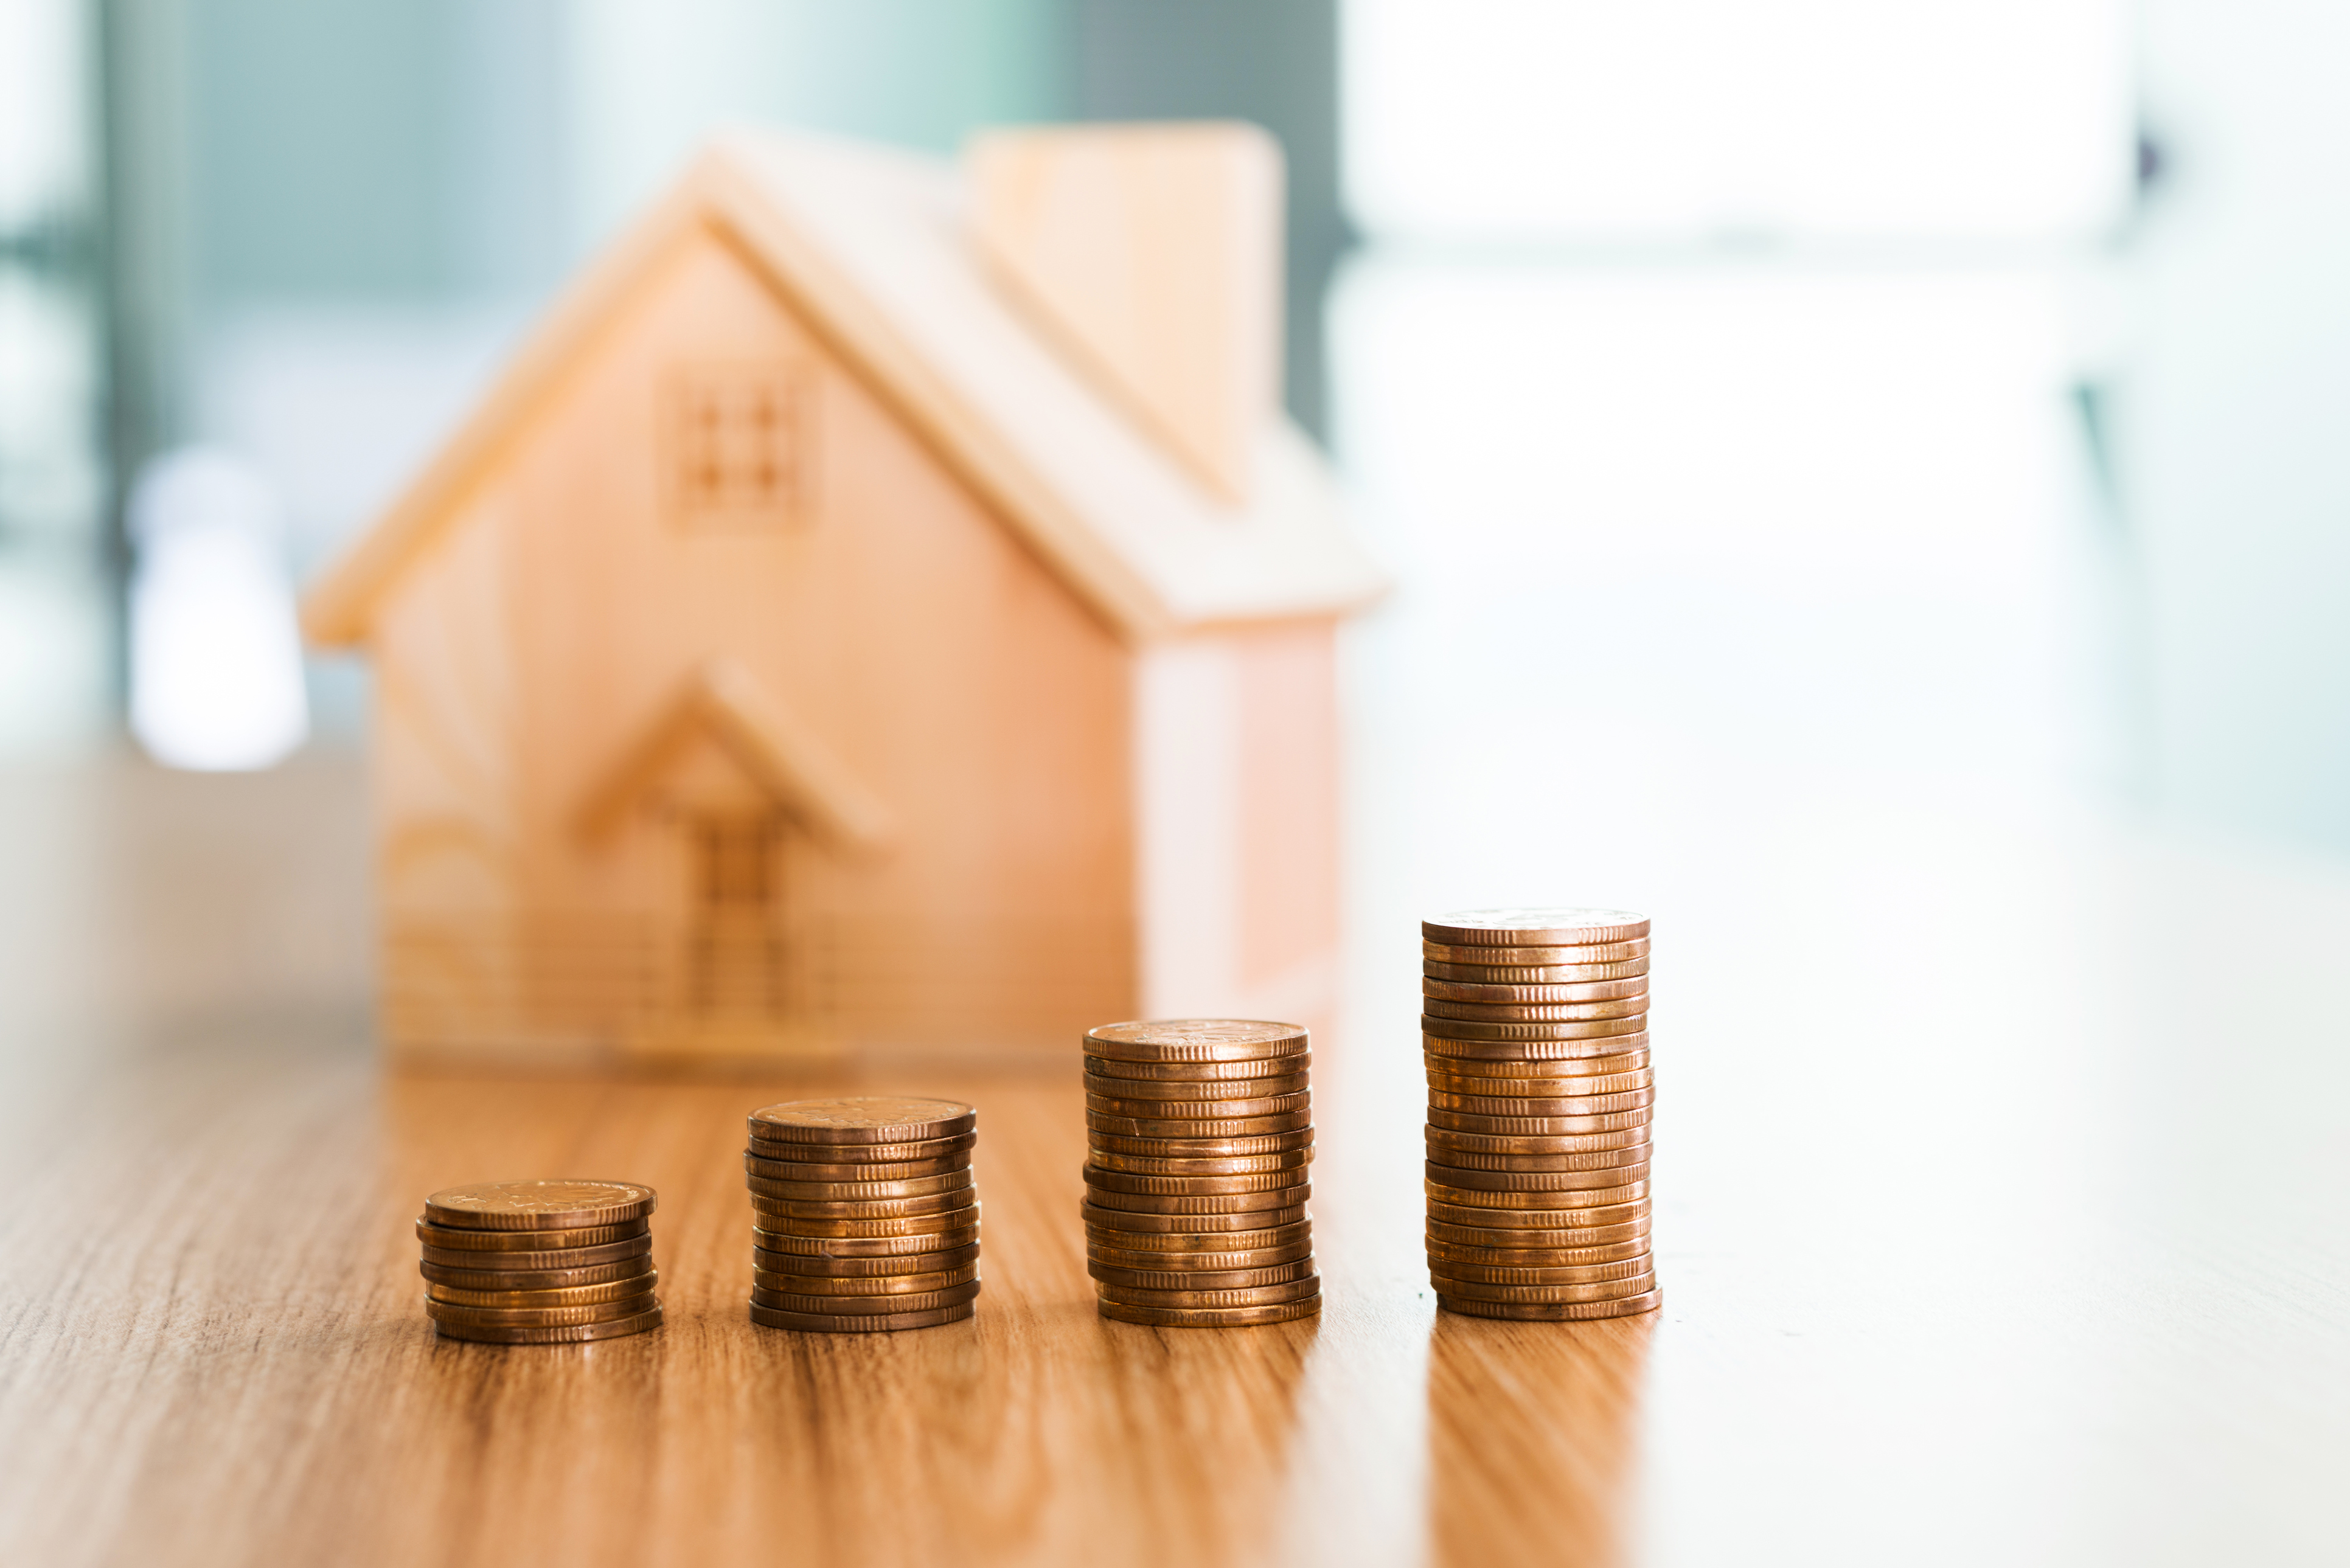 Immobilier: les prix dans l'ancien se stabilisent au premier trimestre 2021